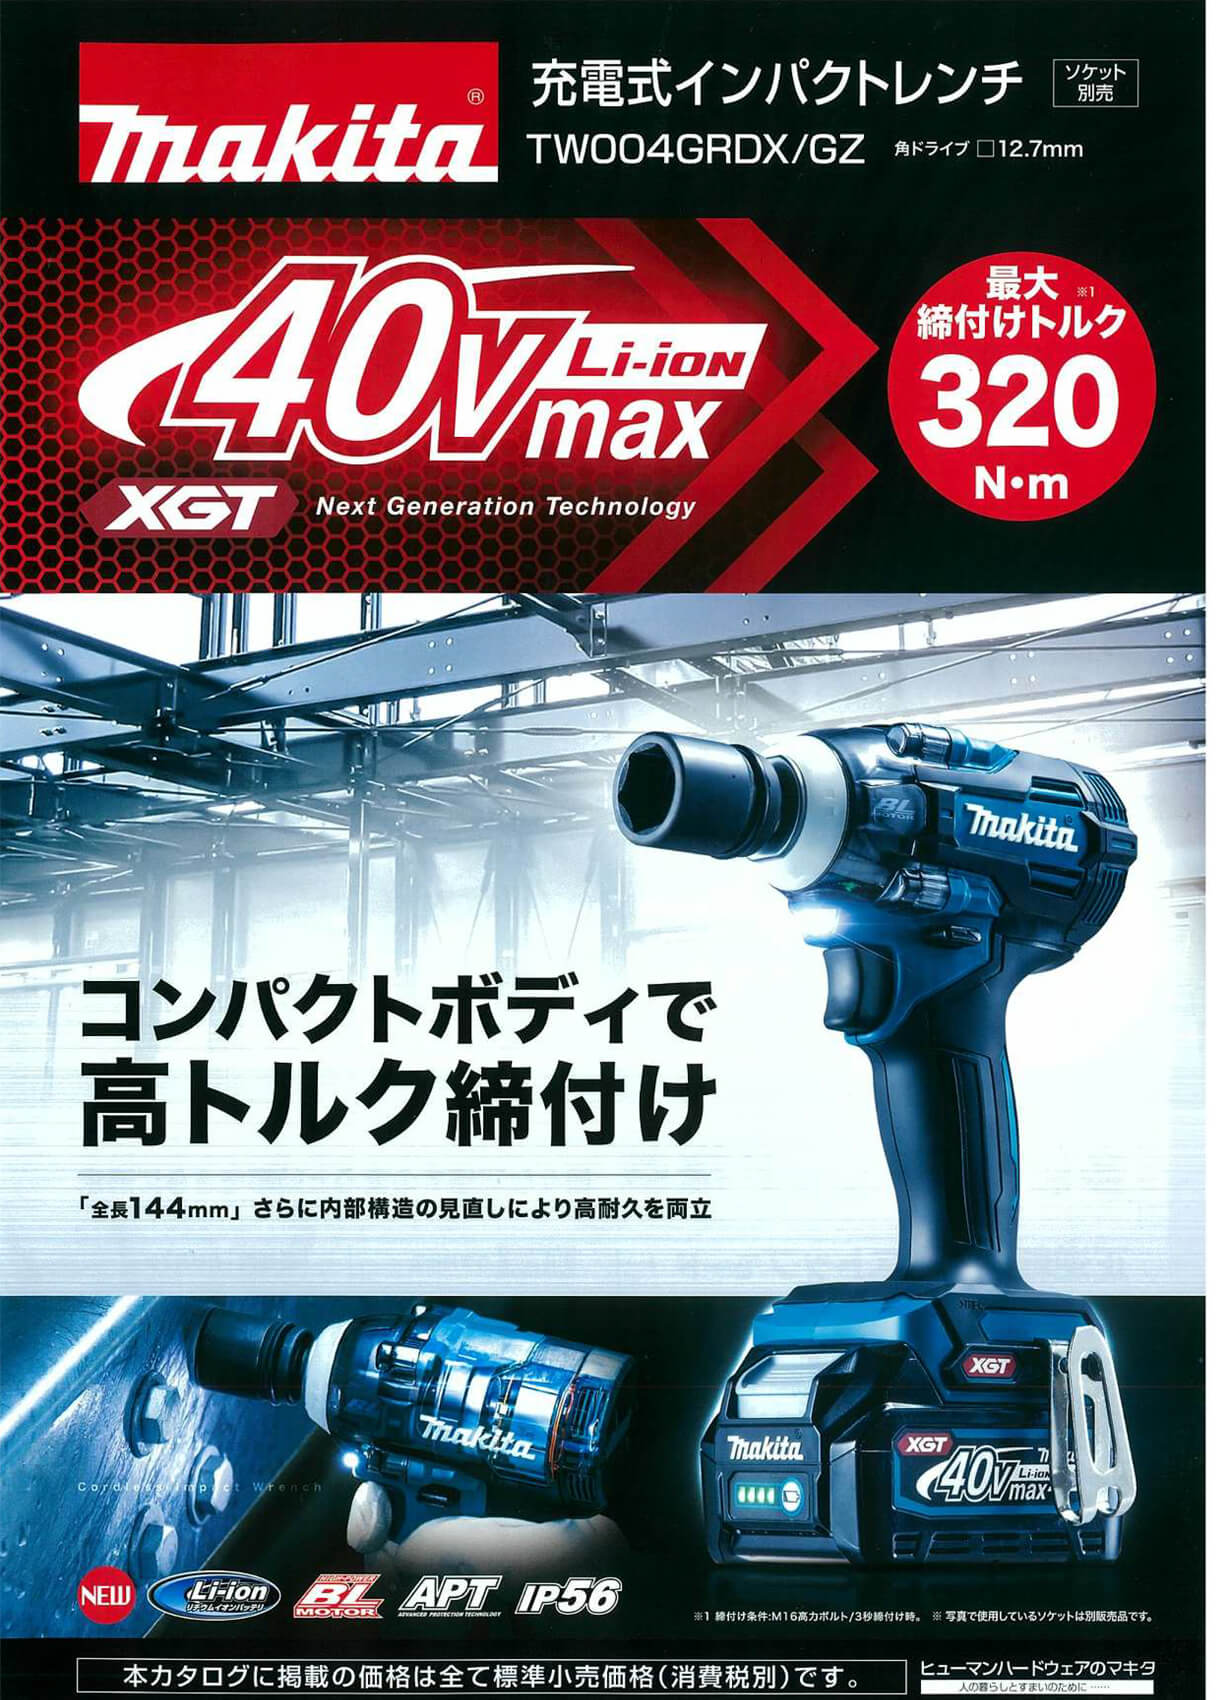 マキタ TW004GRDX 40Vmax充電式インパクトレンチを【徹底解説】